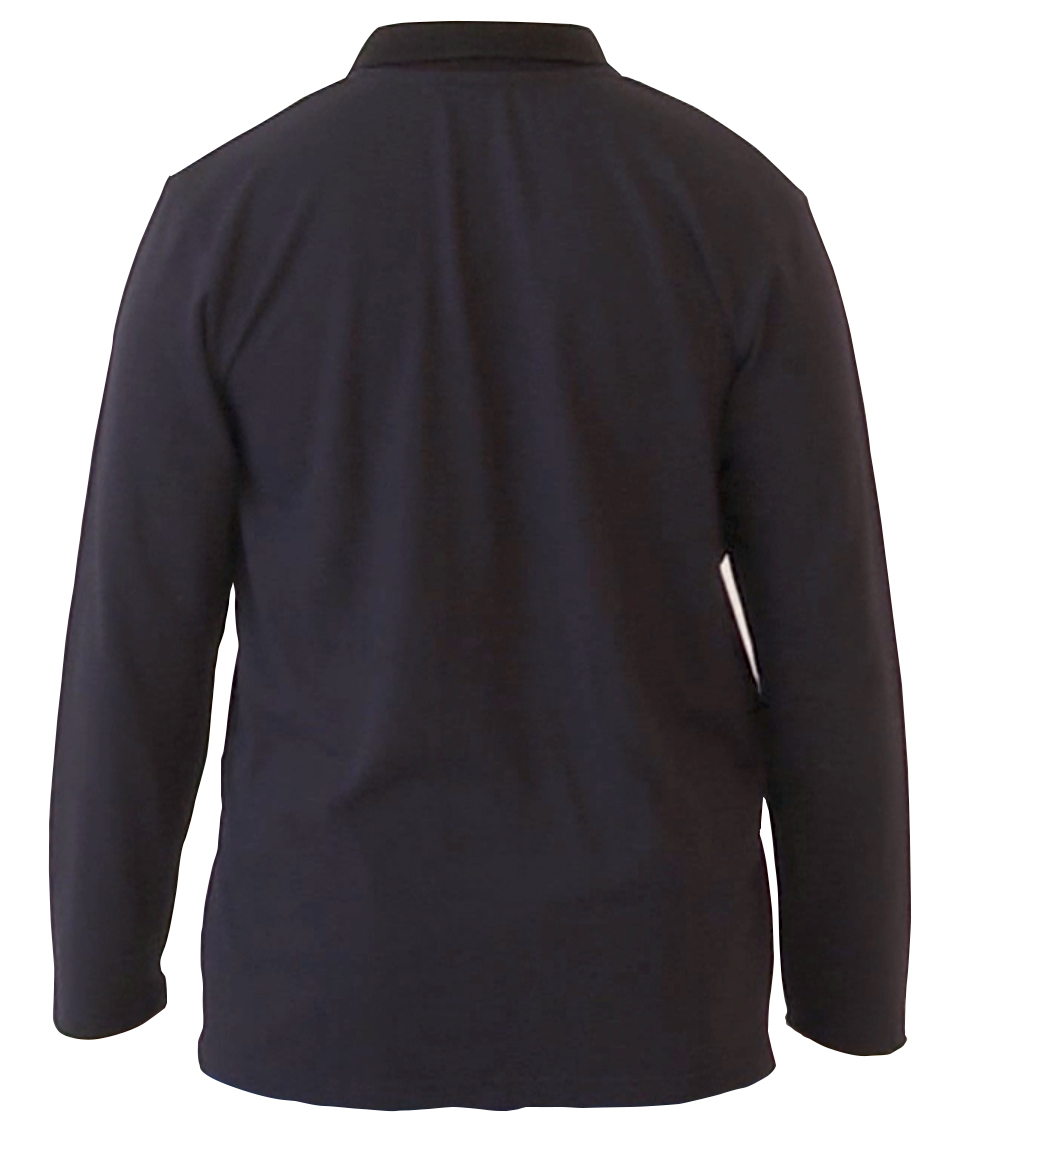 ESD Polo-Shirt Back AQGZ Style Black Unisex XS Antistatic Clothing ESD Garment - 473.AQGZ-APS21-BKXS